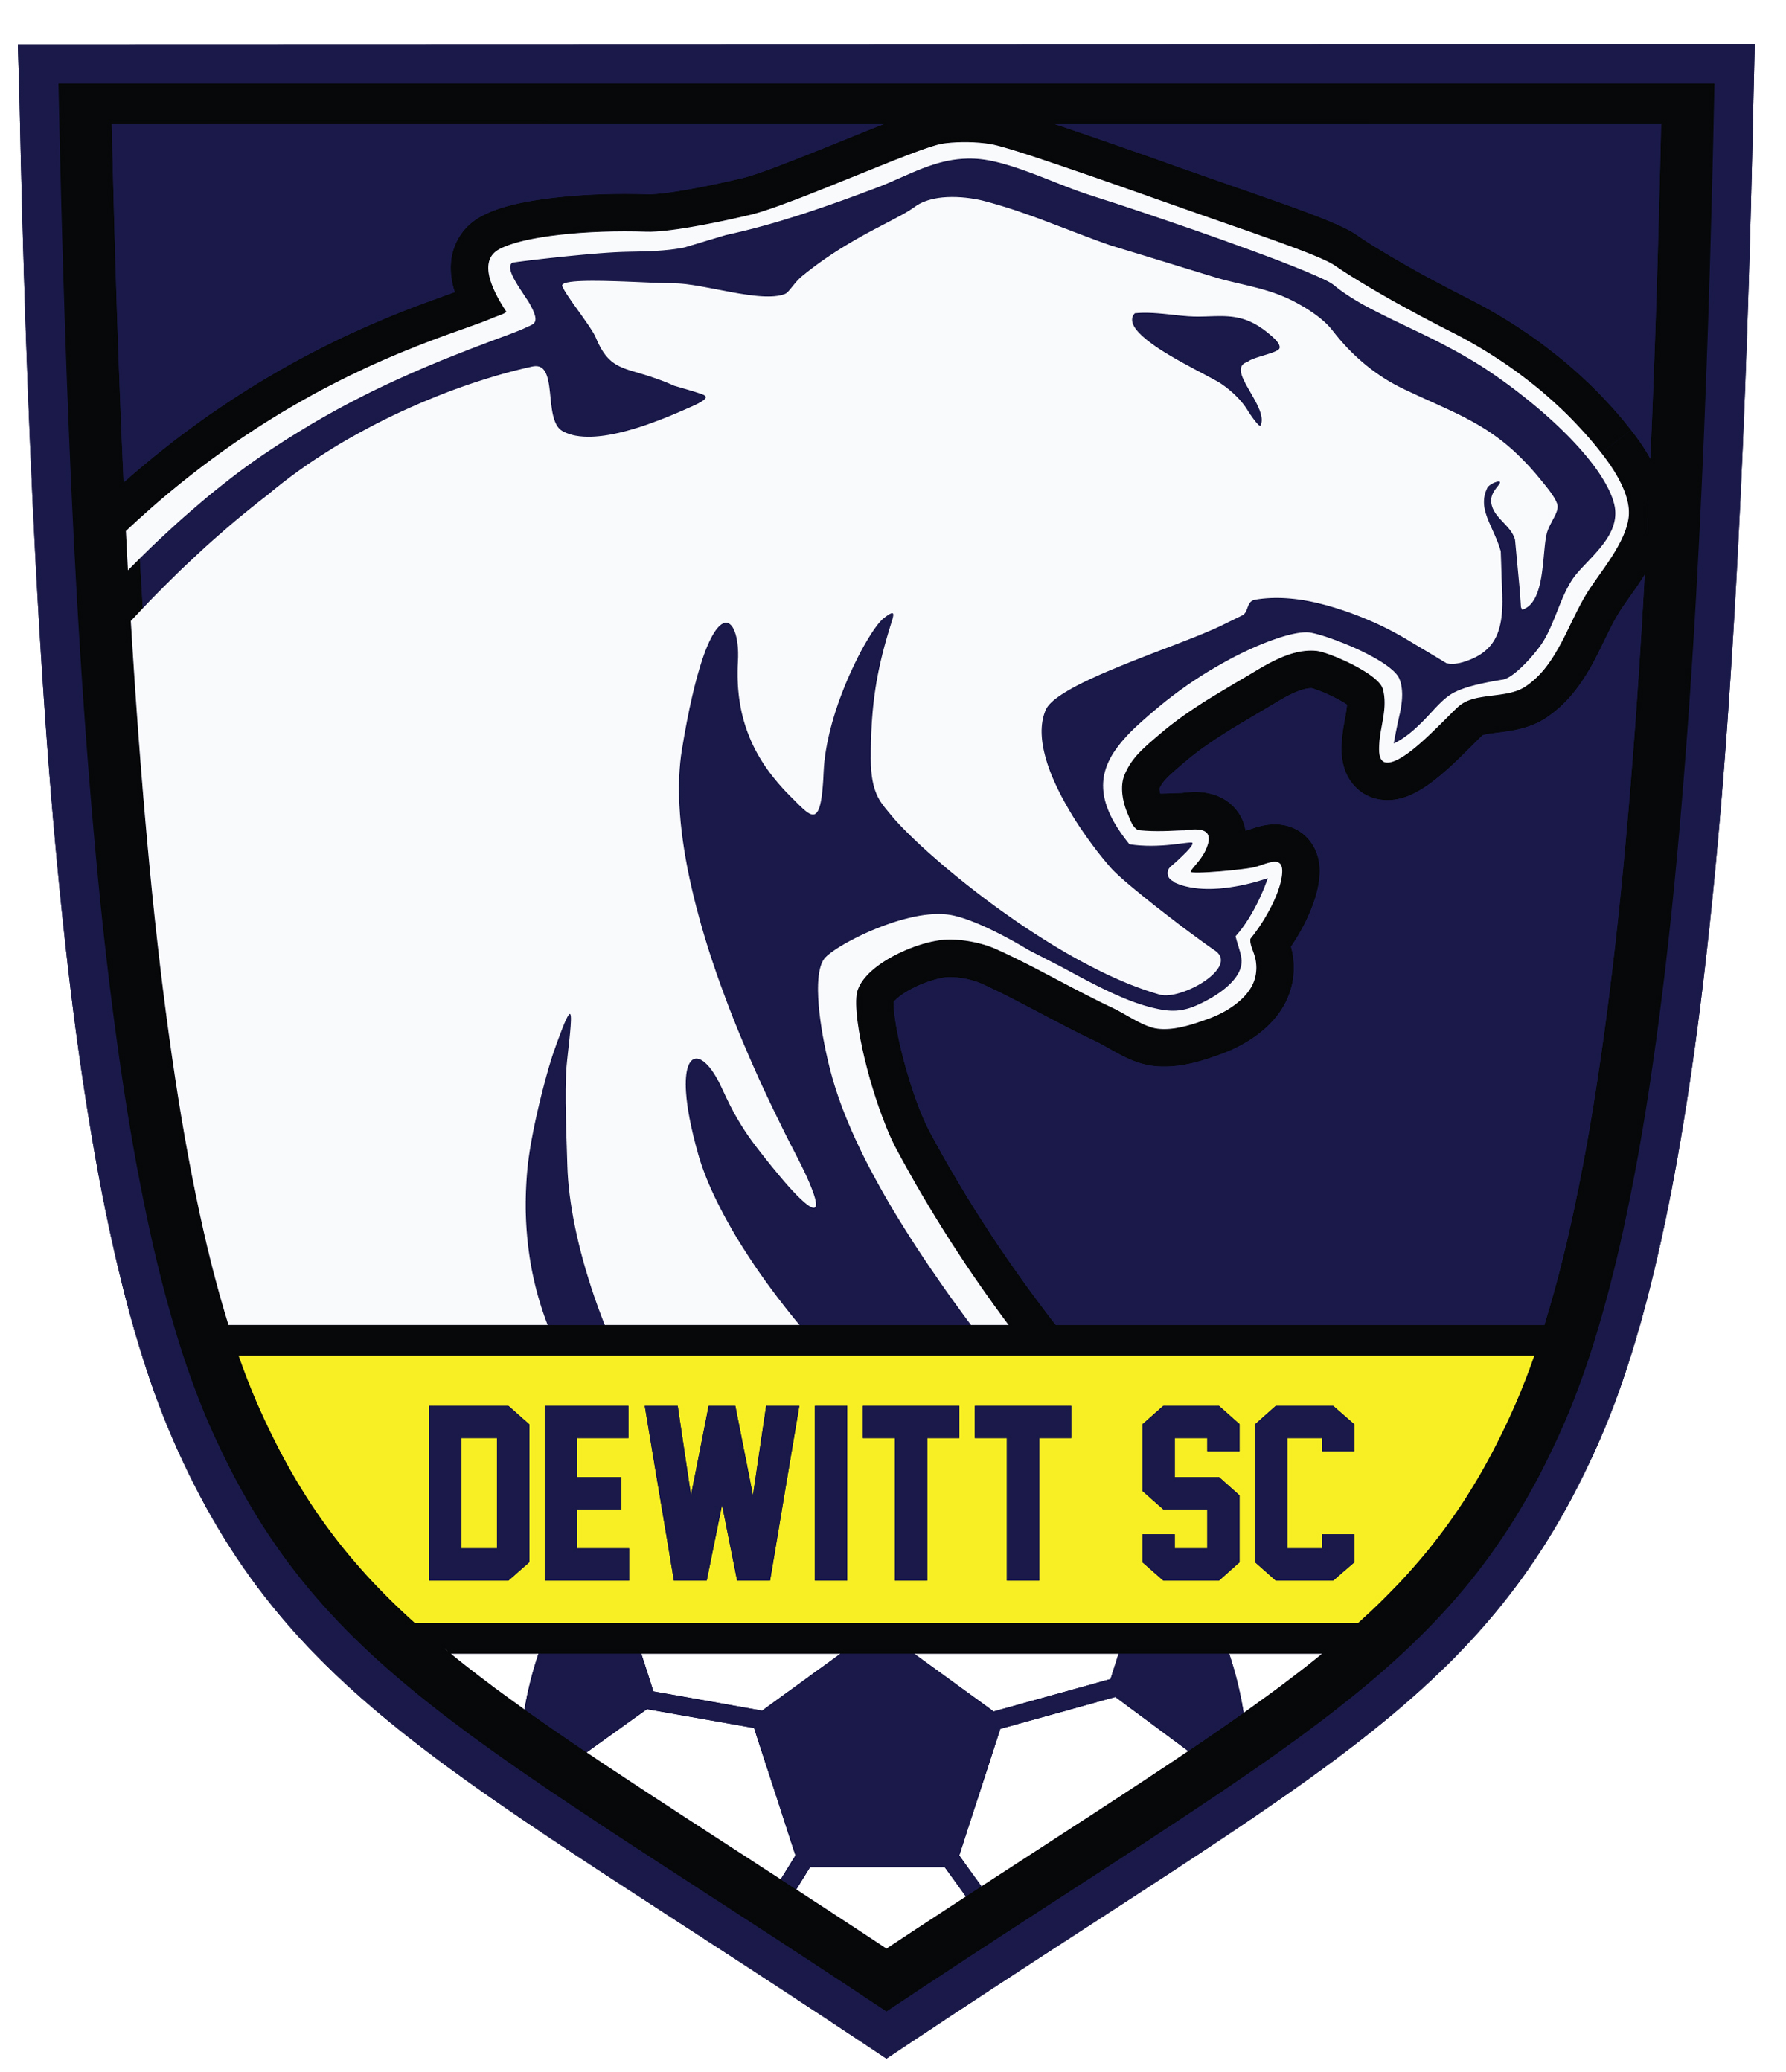 Dewitt Soccer Club team badge